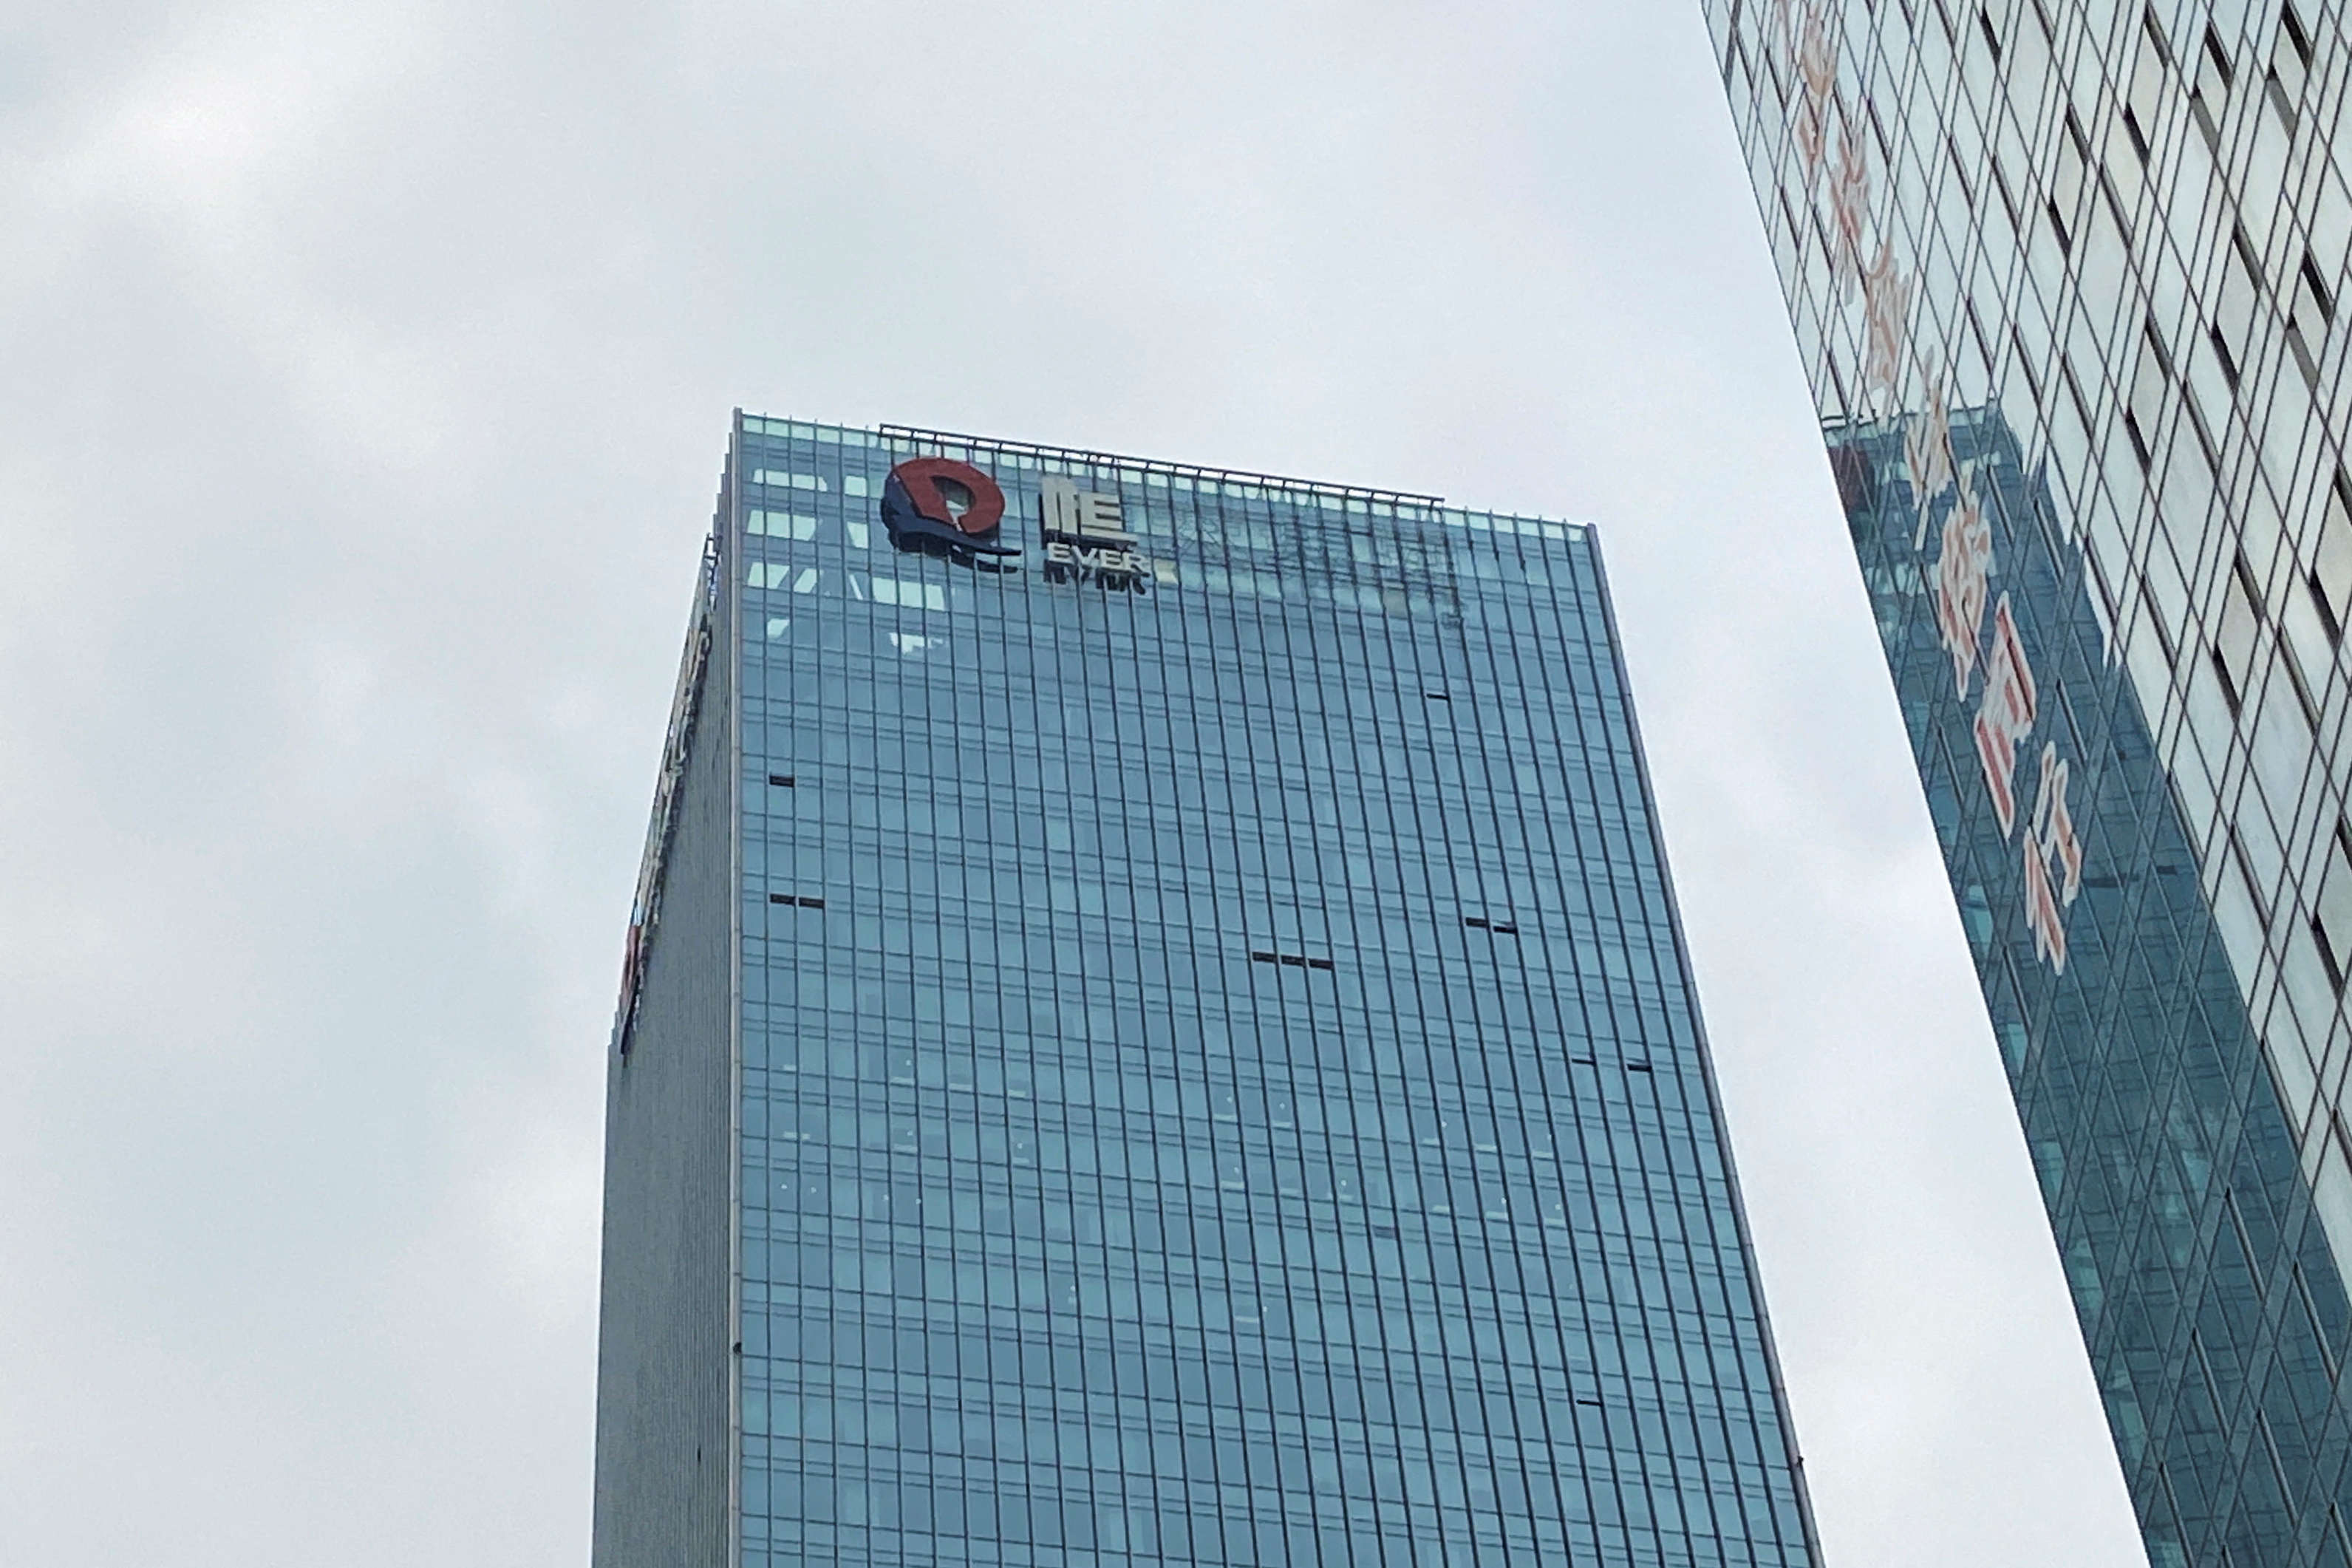 FOTO DE ARCHIVO: Un logotipo de la empresa China Evergrande Group parcialmente retirado se ve en la fachada de su sede en Shenzhen, provincia de Guangdong, China 10 de enero de 2022. REUTERS/David Kirton